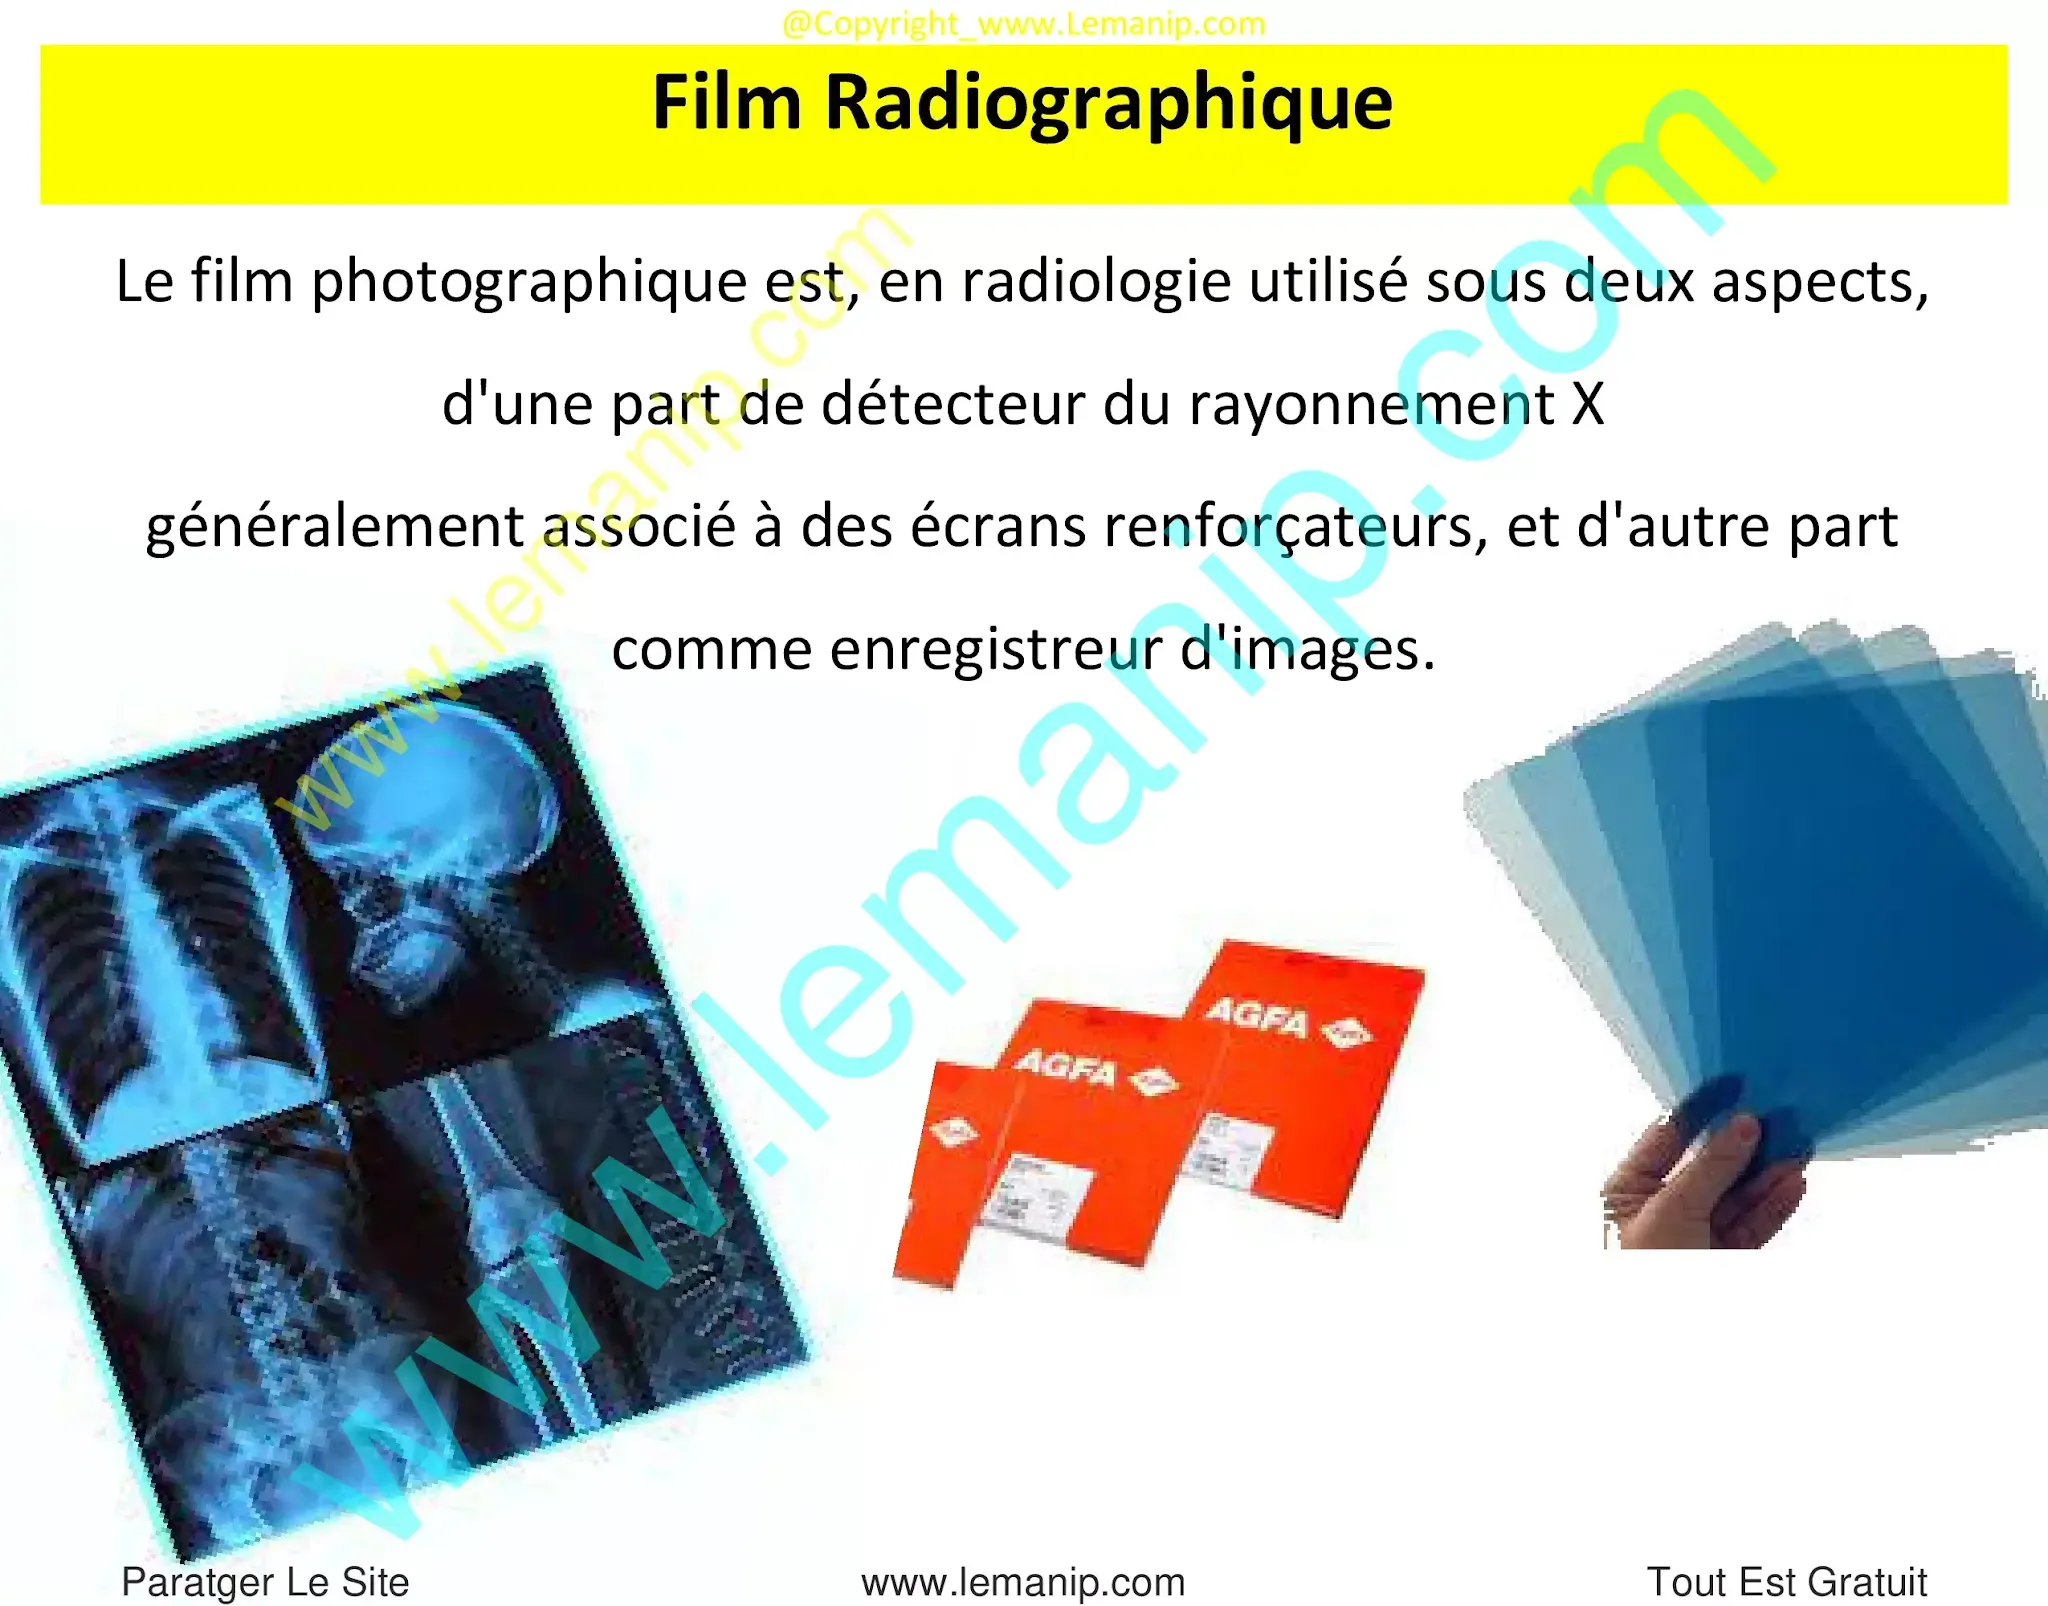 Film Radiographique